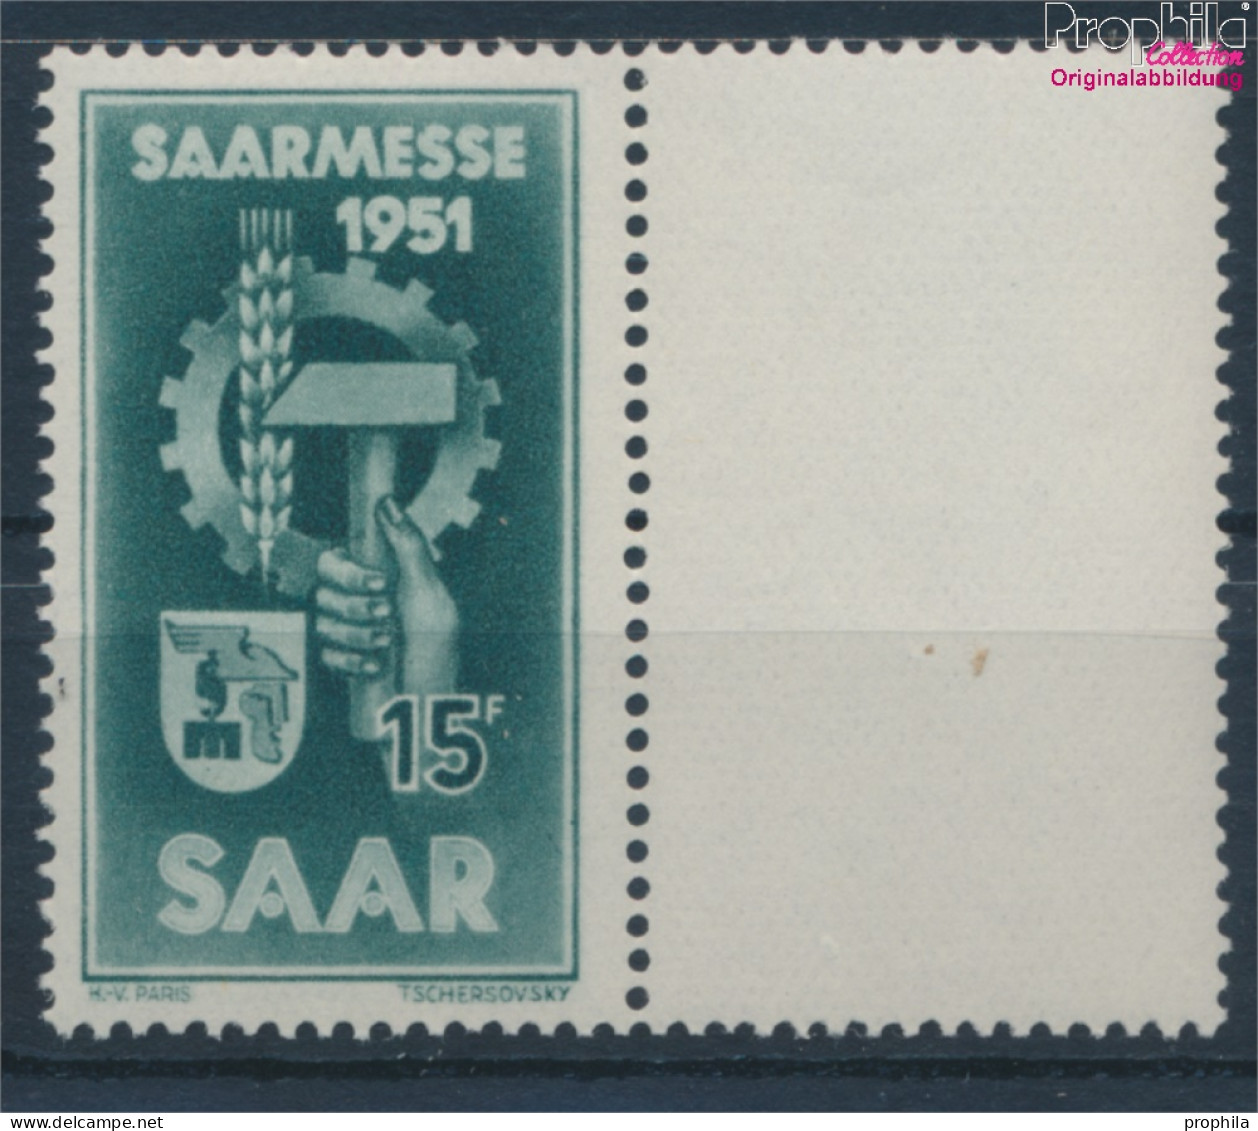 Saarland 306 (kompl.Ausg.) Postfrisch 1951 Saarmesse (10357410 - Gebraucht